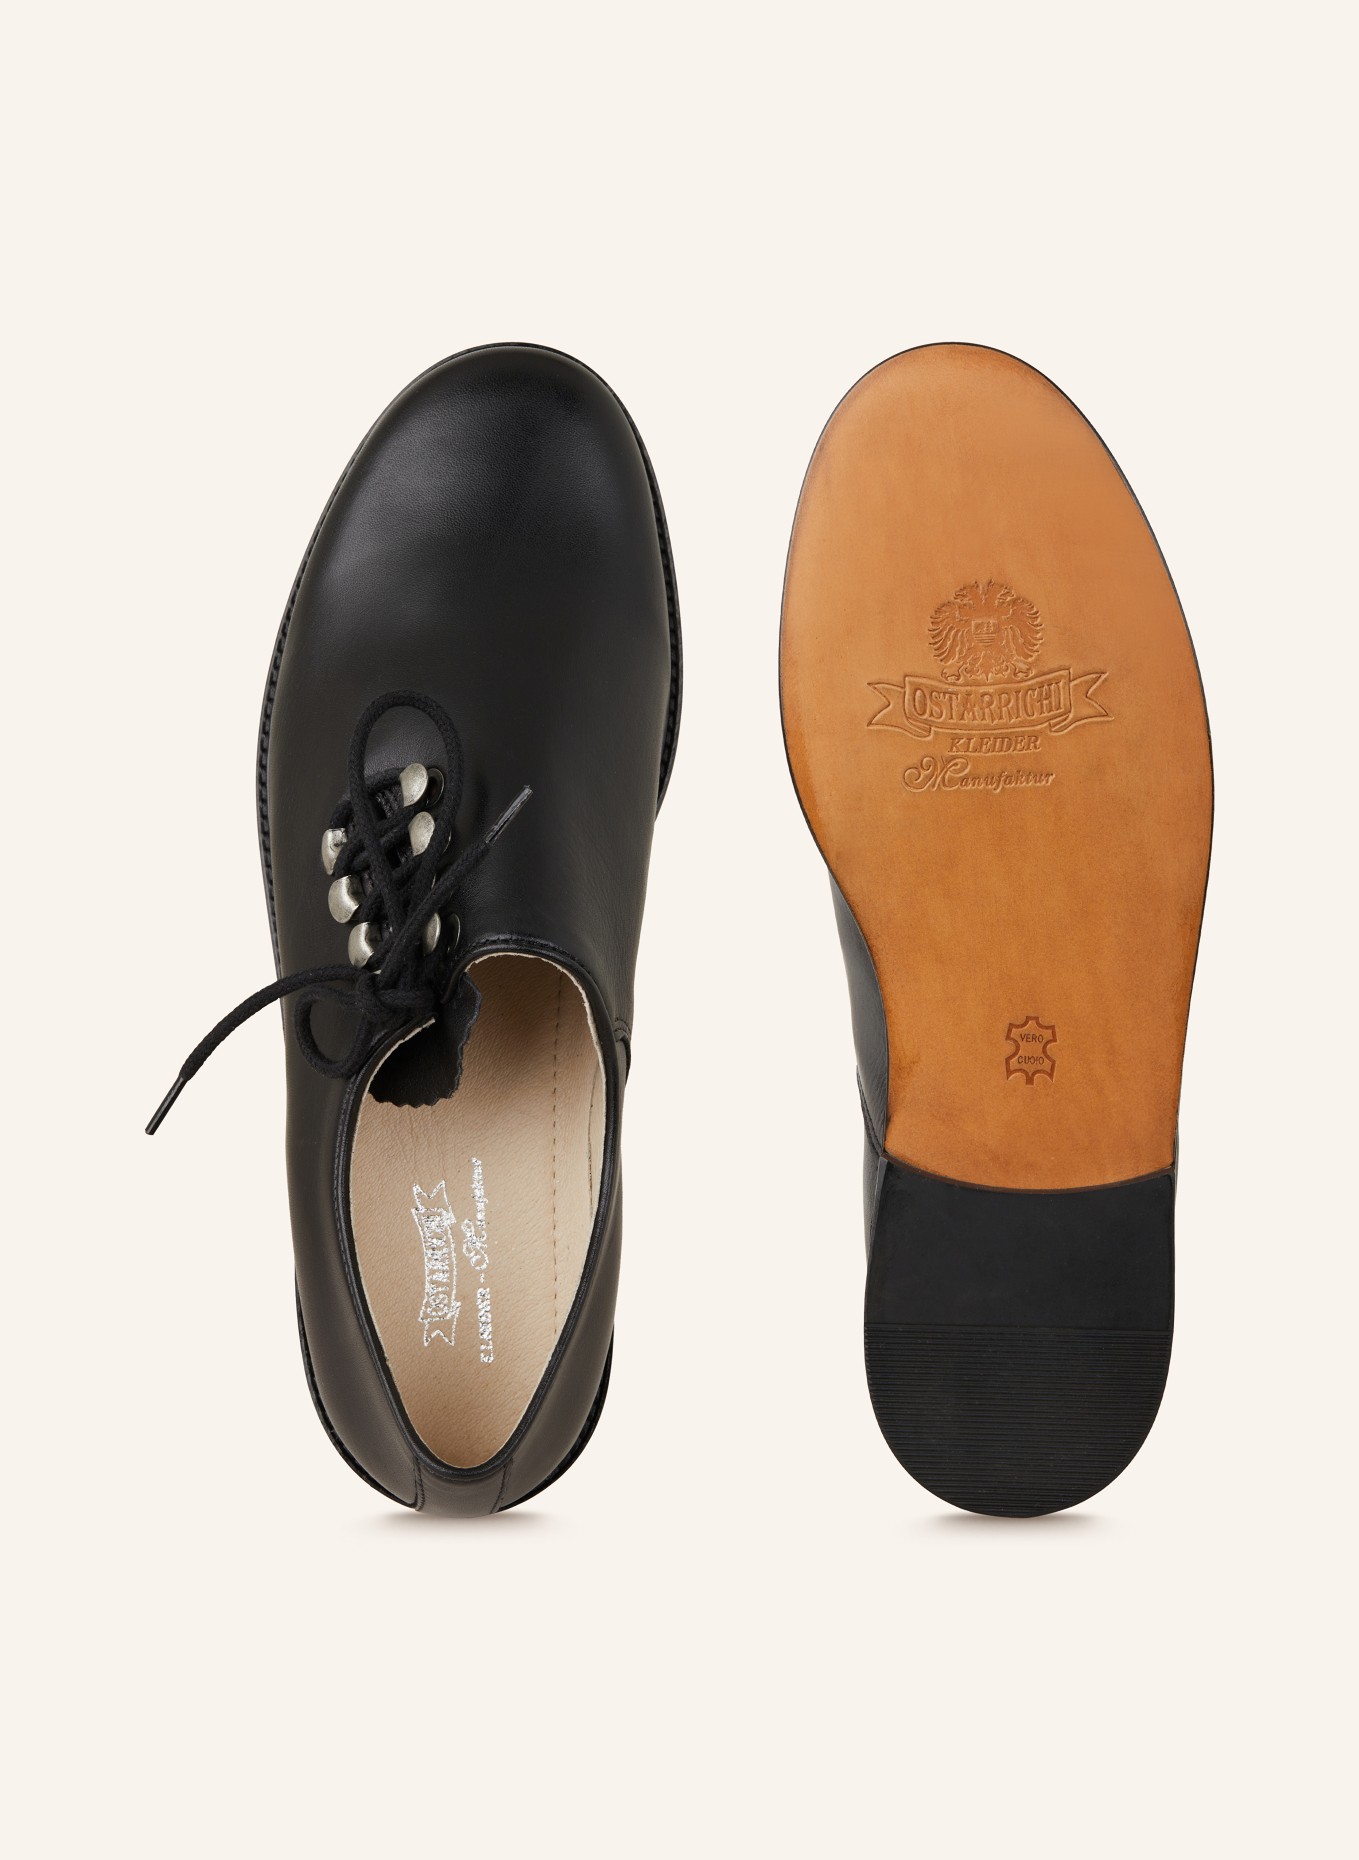 OSTARRICHI Trachten lace-up shoes, Color: BLACK (Image 5)